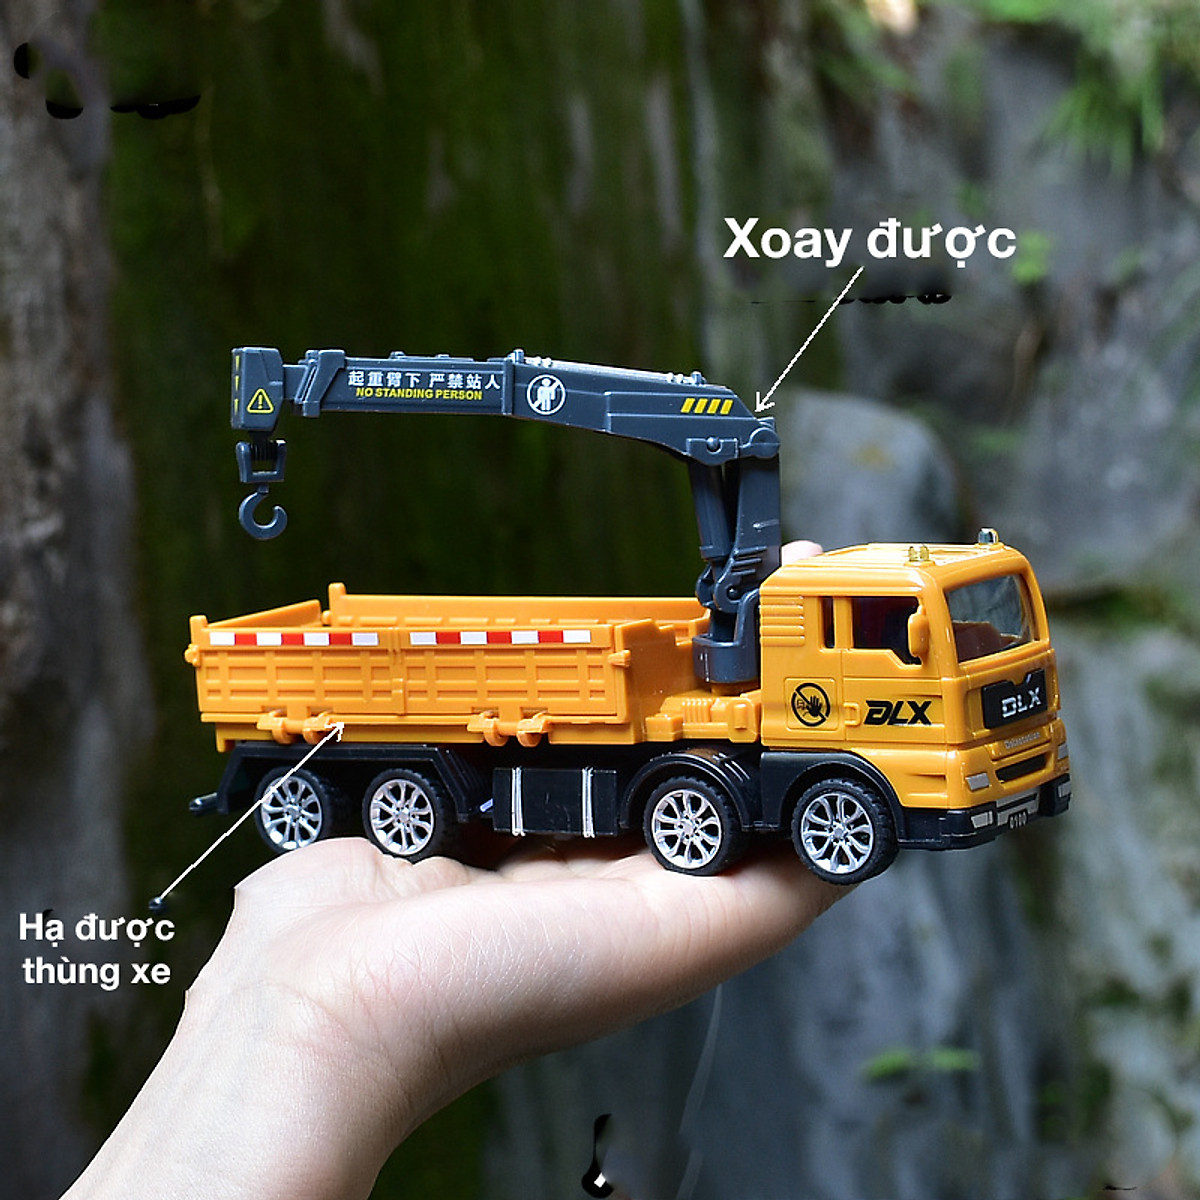 Mua Ngay Xe đồ chơi mô hình KAVY xe tải nâng hàng cho bé chất liệu nhựa an toàn, kích thước lớn Giúp Trẻ Phát Triển